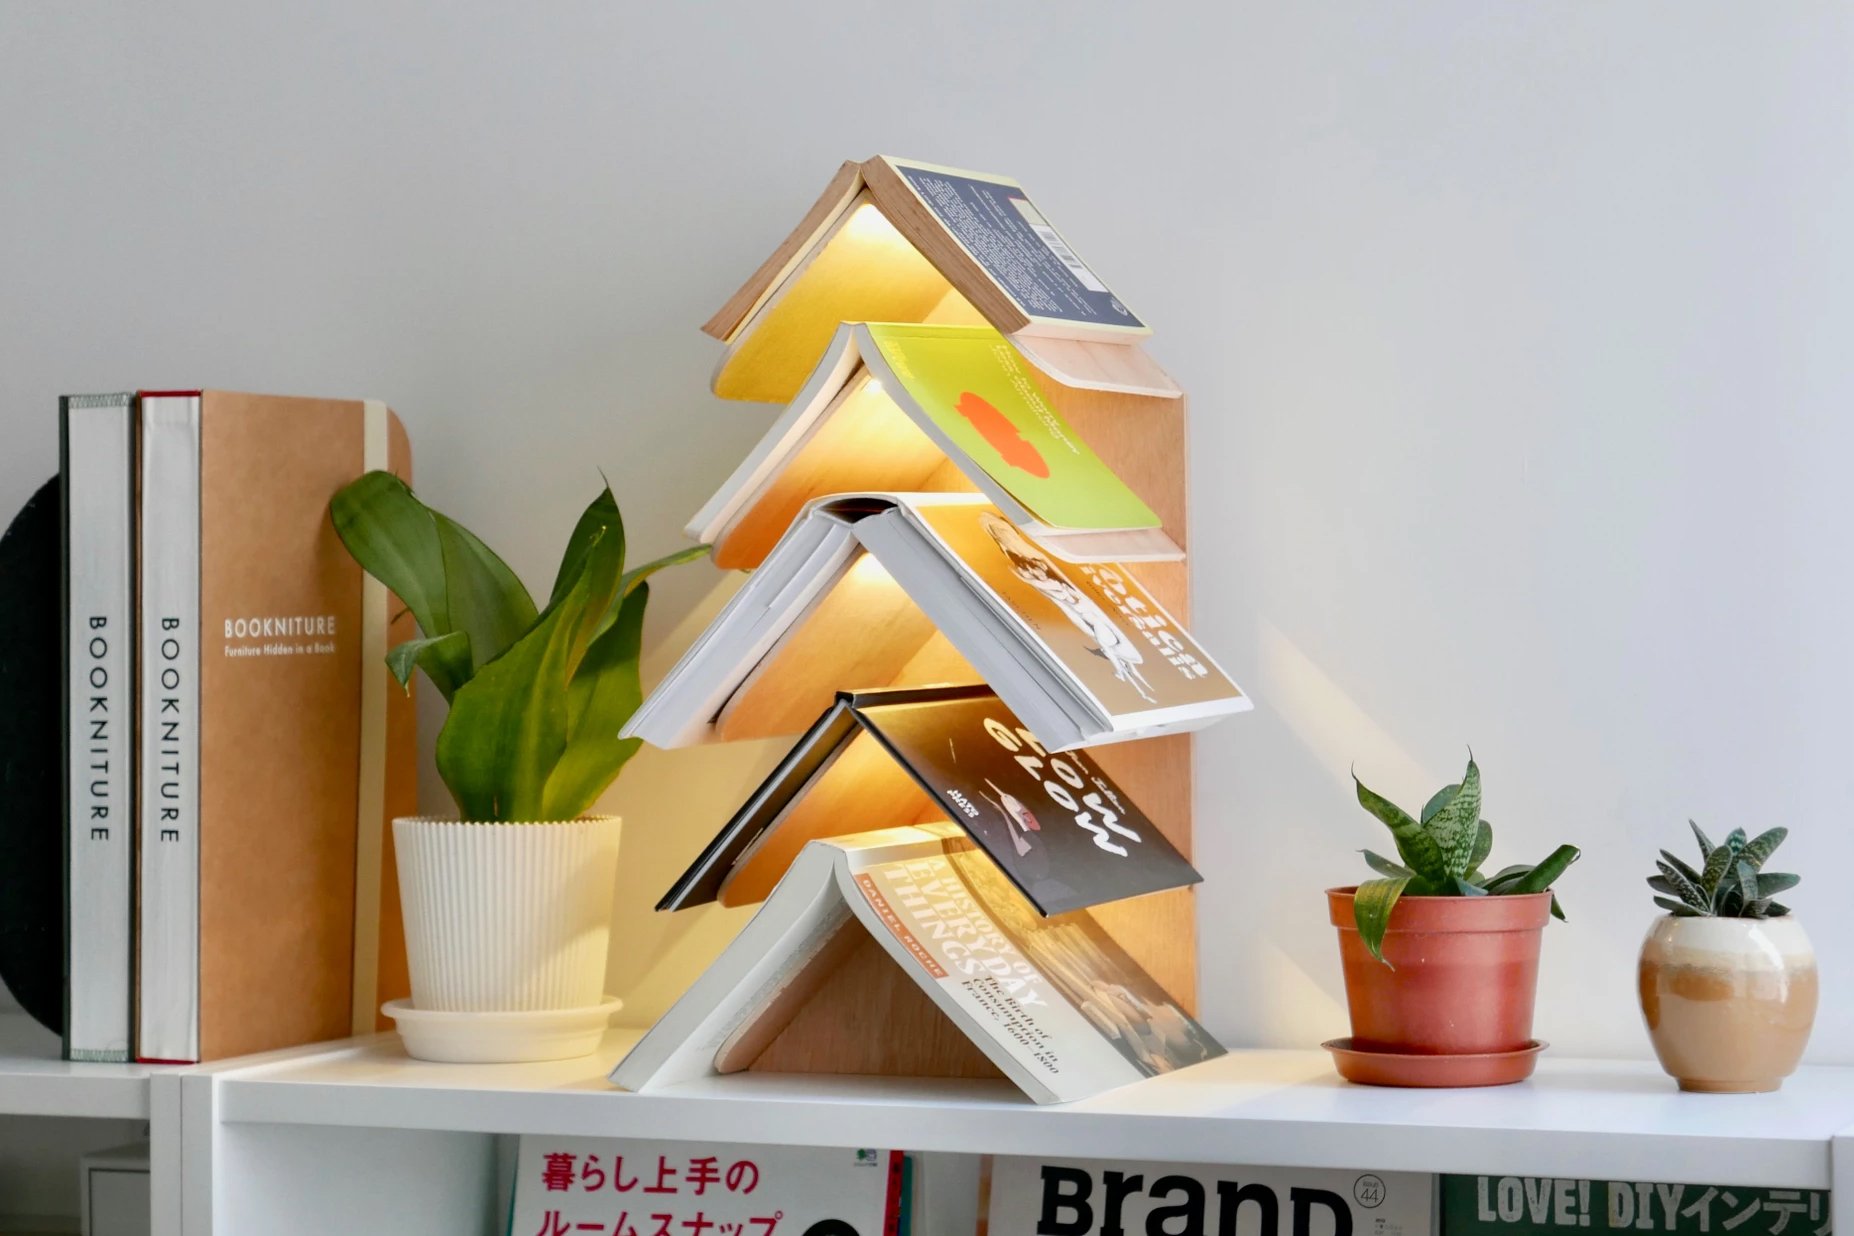 Meet The Wisdom Tree A Bookshelf That Looks Like A Christmas Tree